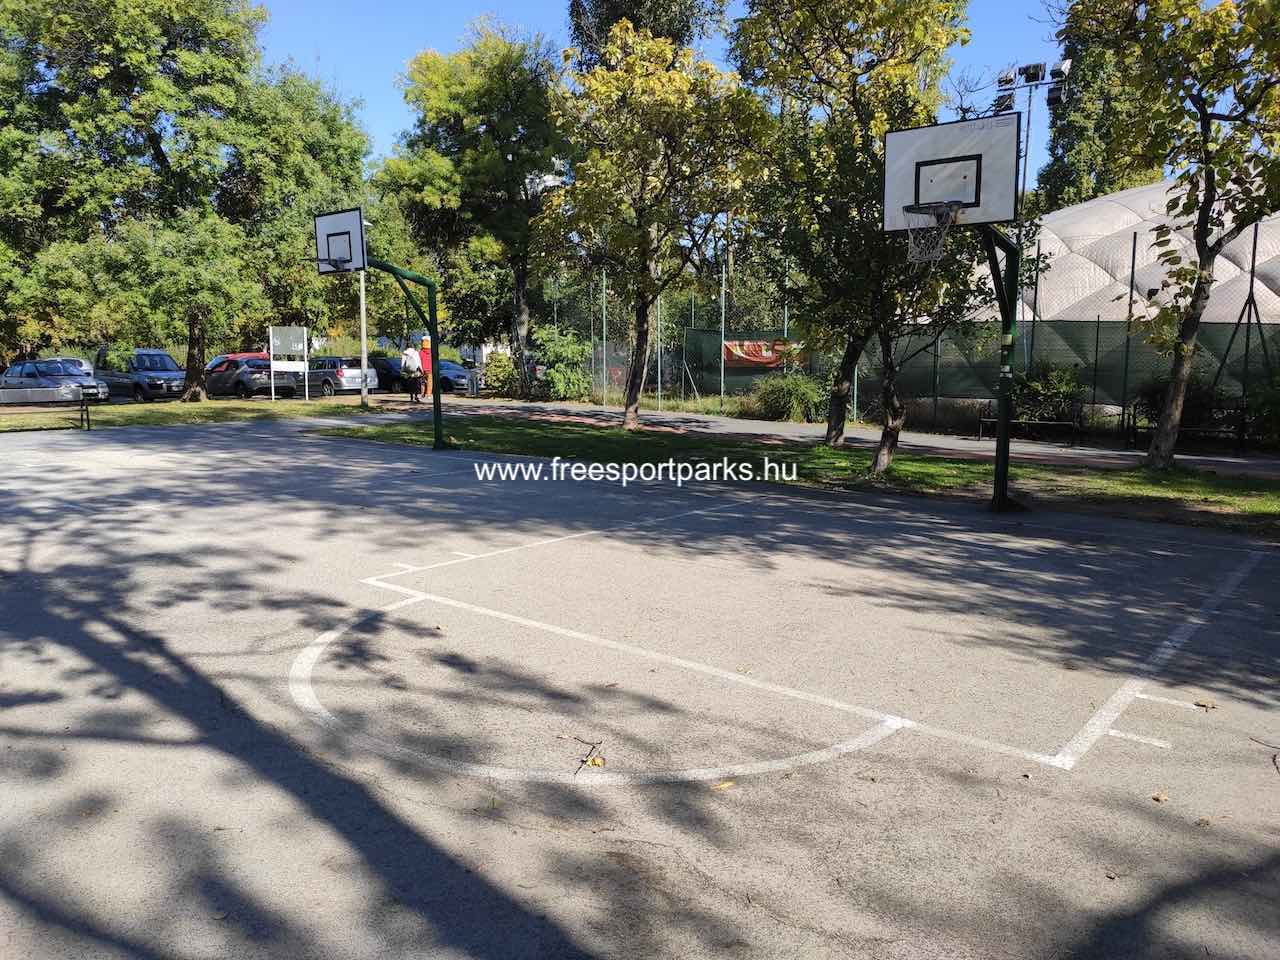 streetball pálya, Bikás park - Free Sport Parks blog